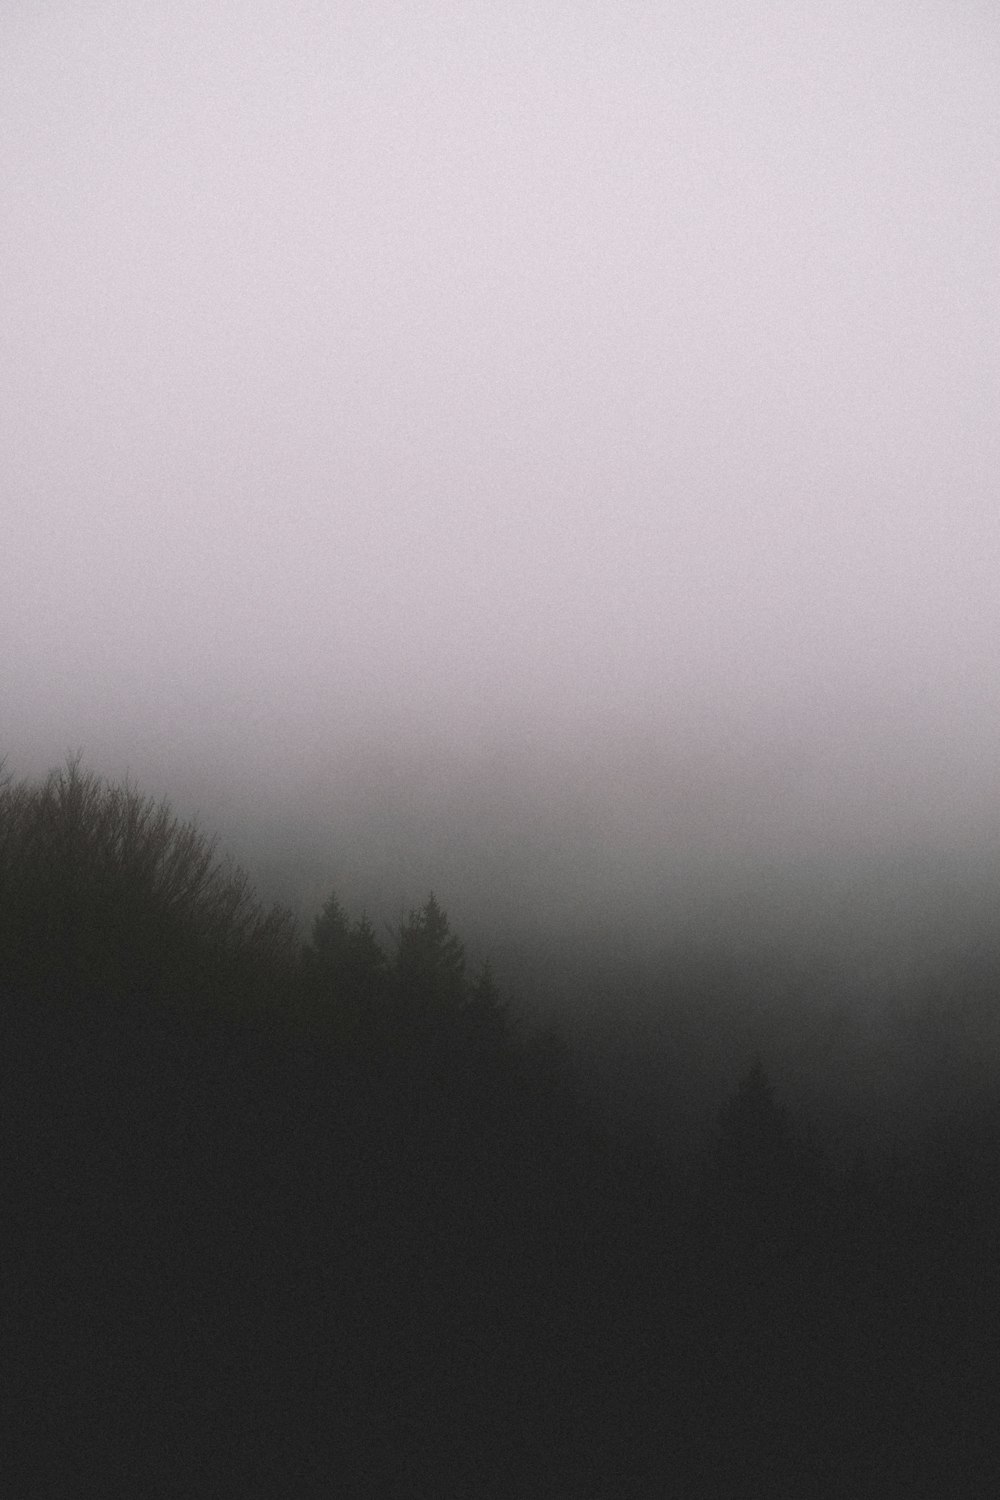 silueta de árboles con niebla